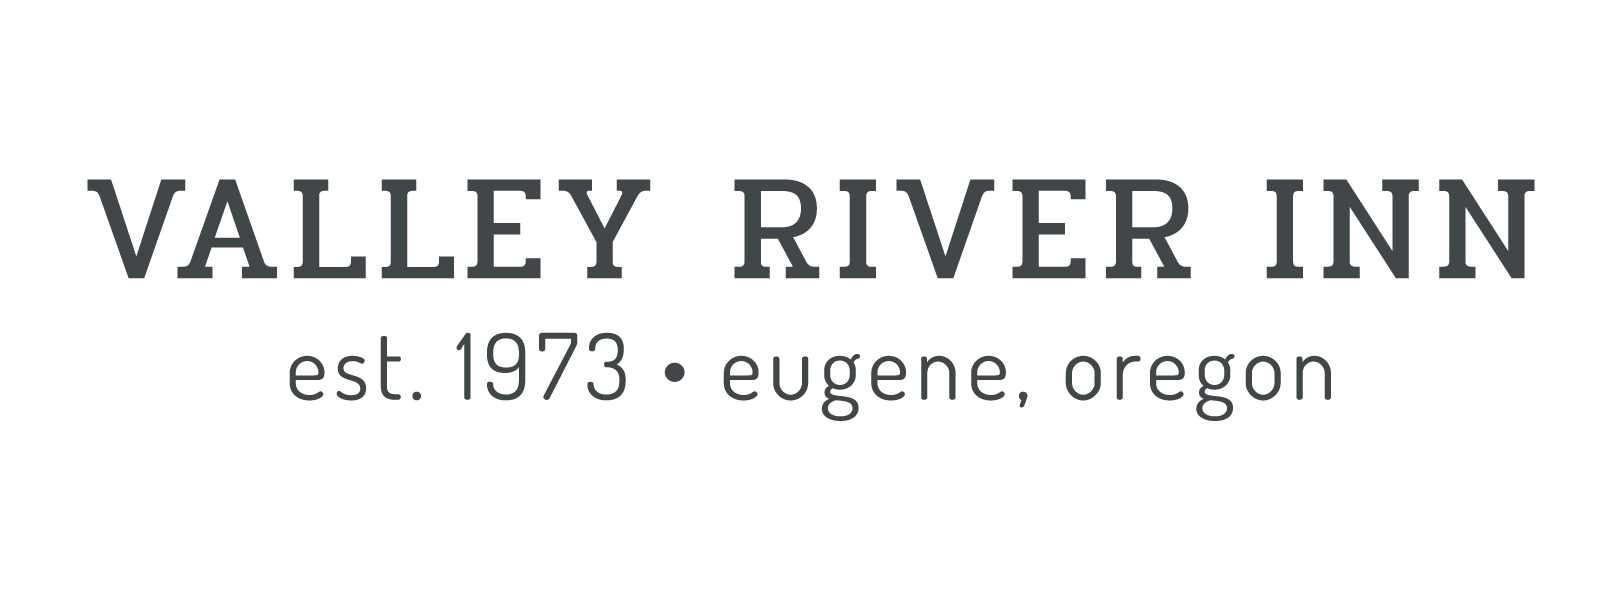 Valley River Inn